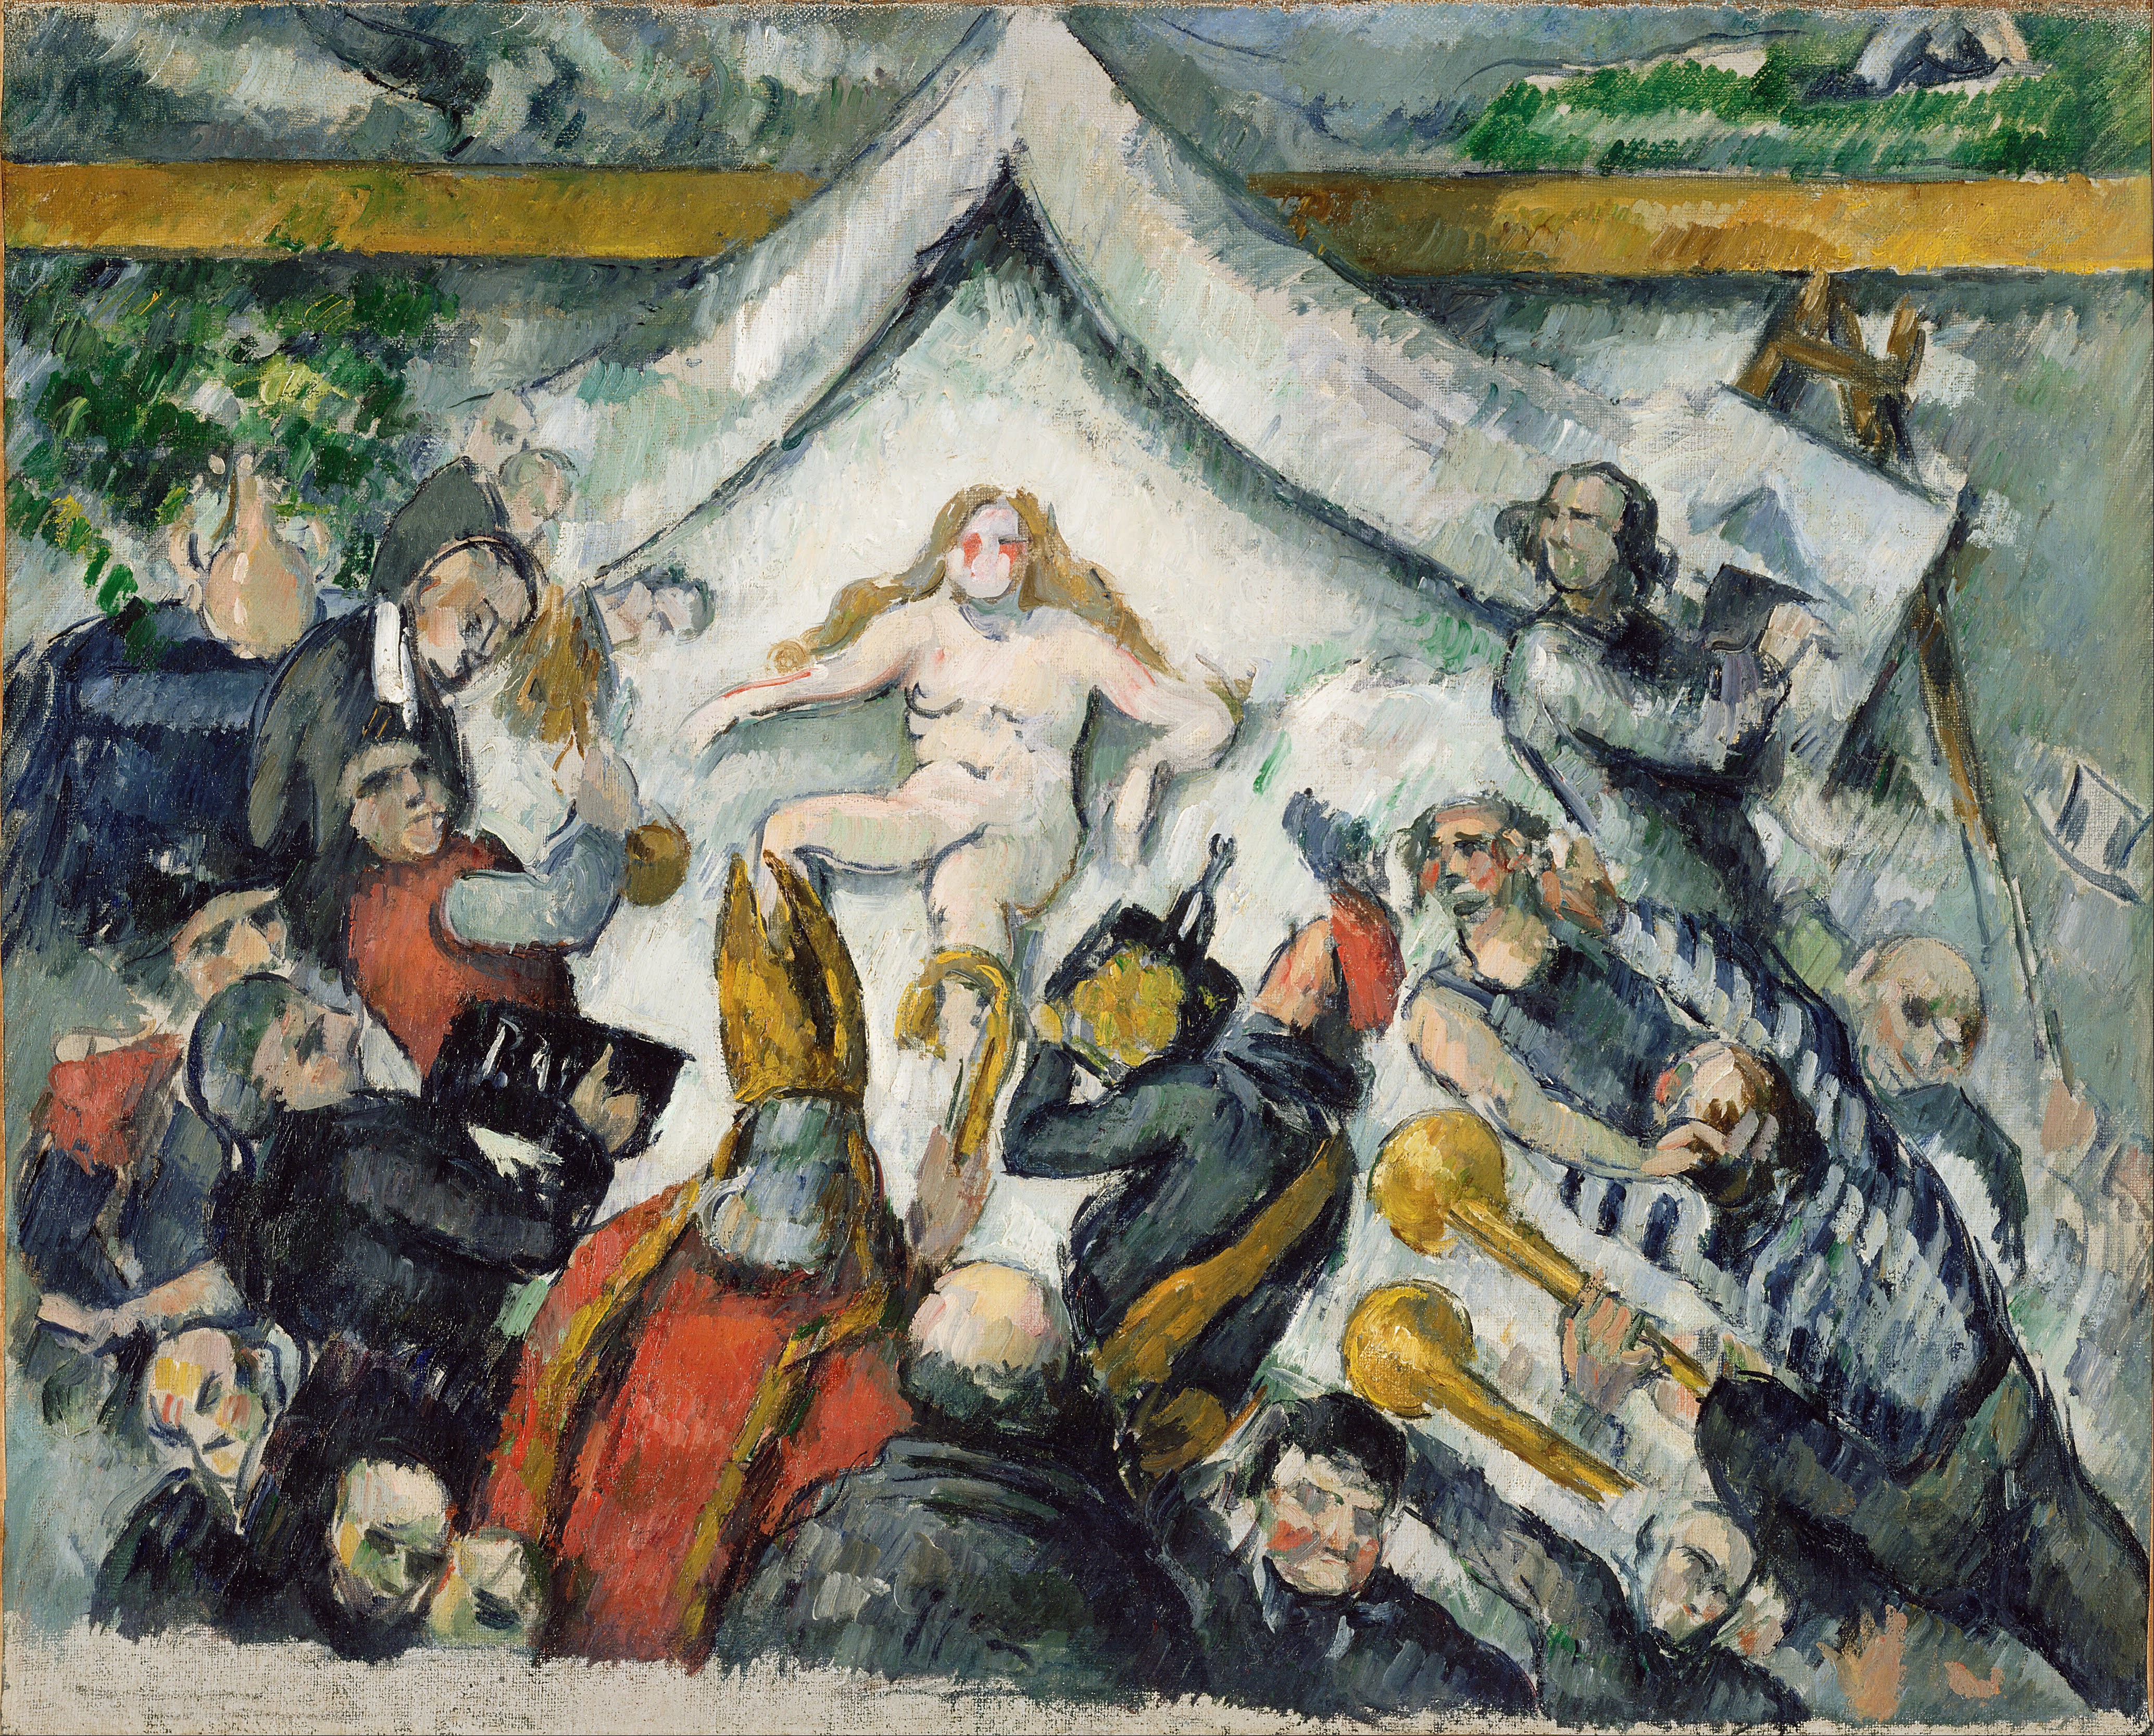 The Eternal Feminine (Odwieczna kobiecość) by Paul Cézanne - c. 1877 - 53 x 43.2 cm 